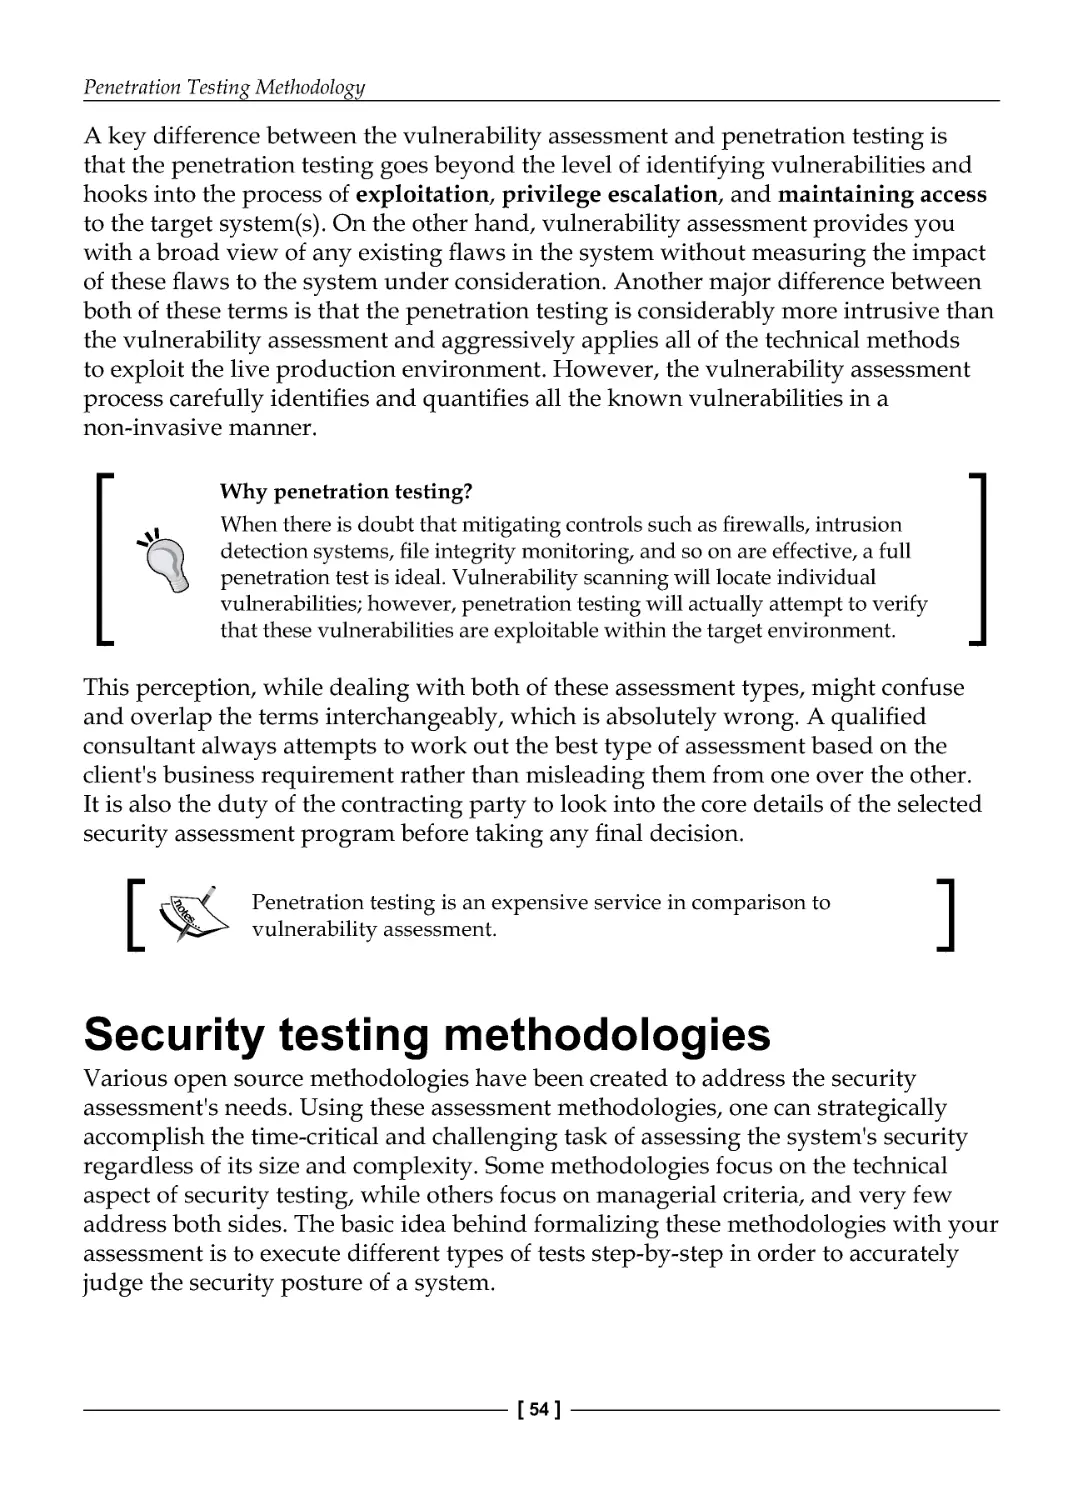 Security testing methodologies